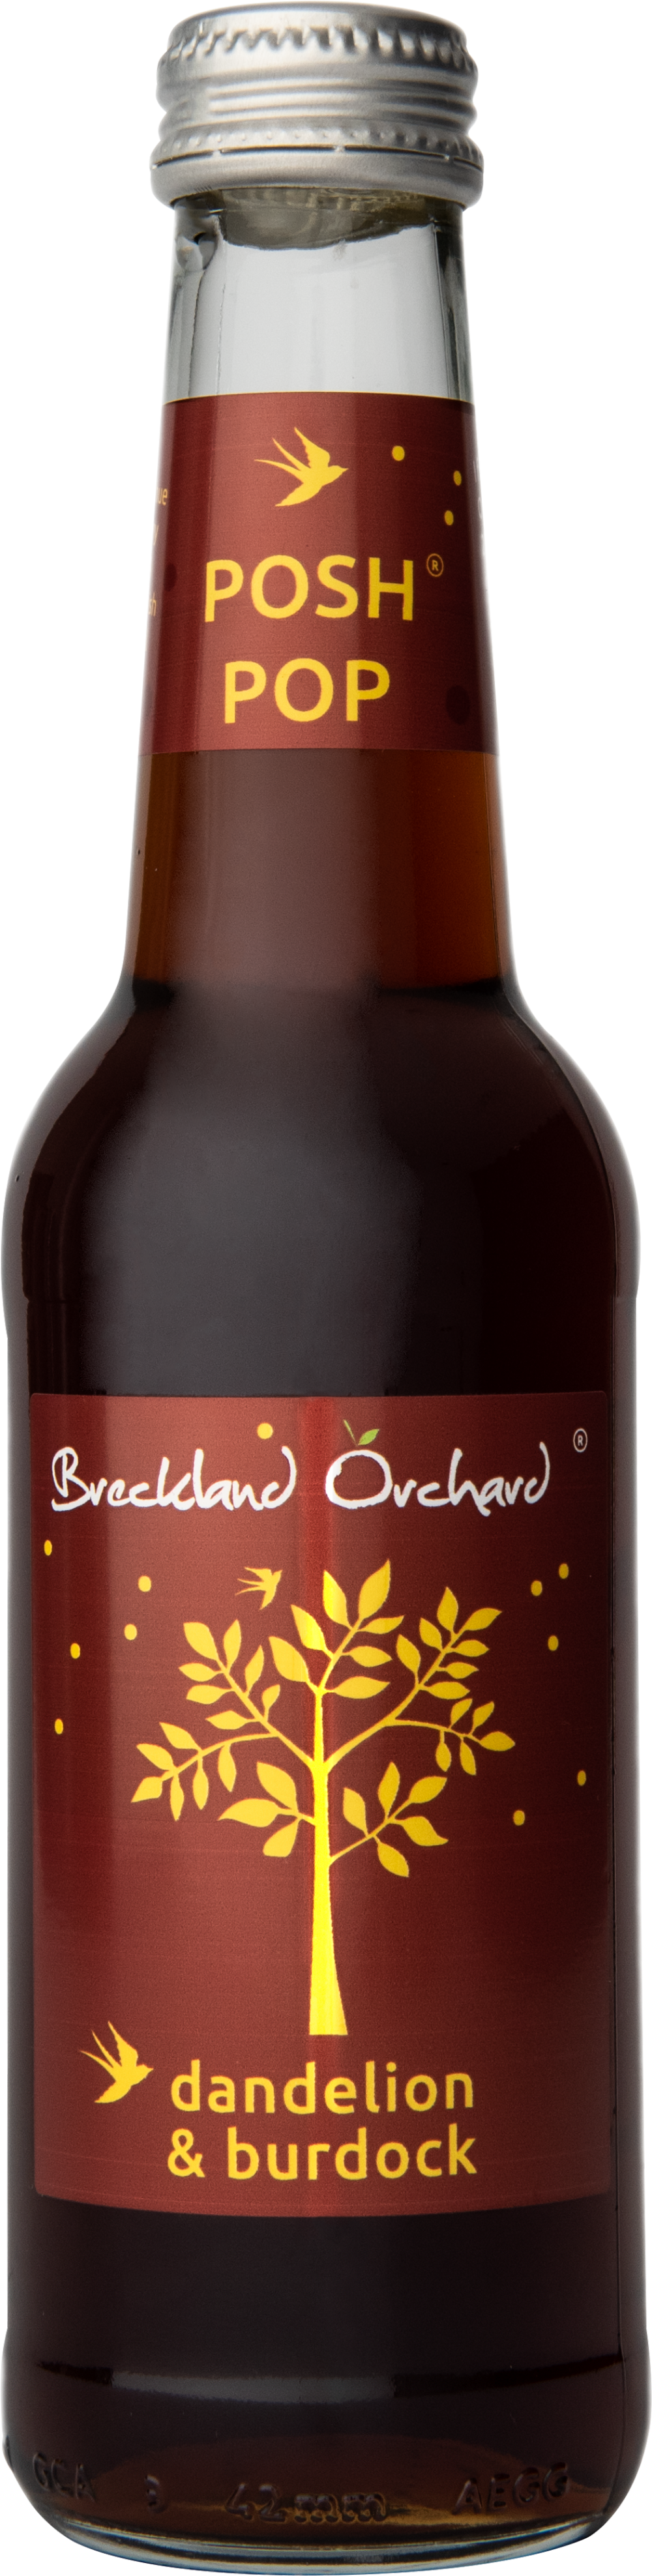 BRECKLAND ORCHARD Posh Pop - Dandelion & Burdock 275ml